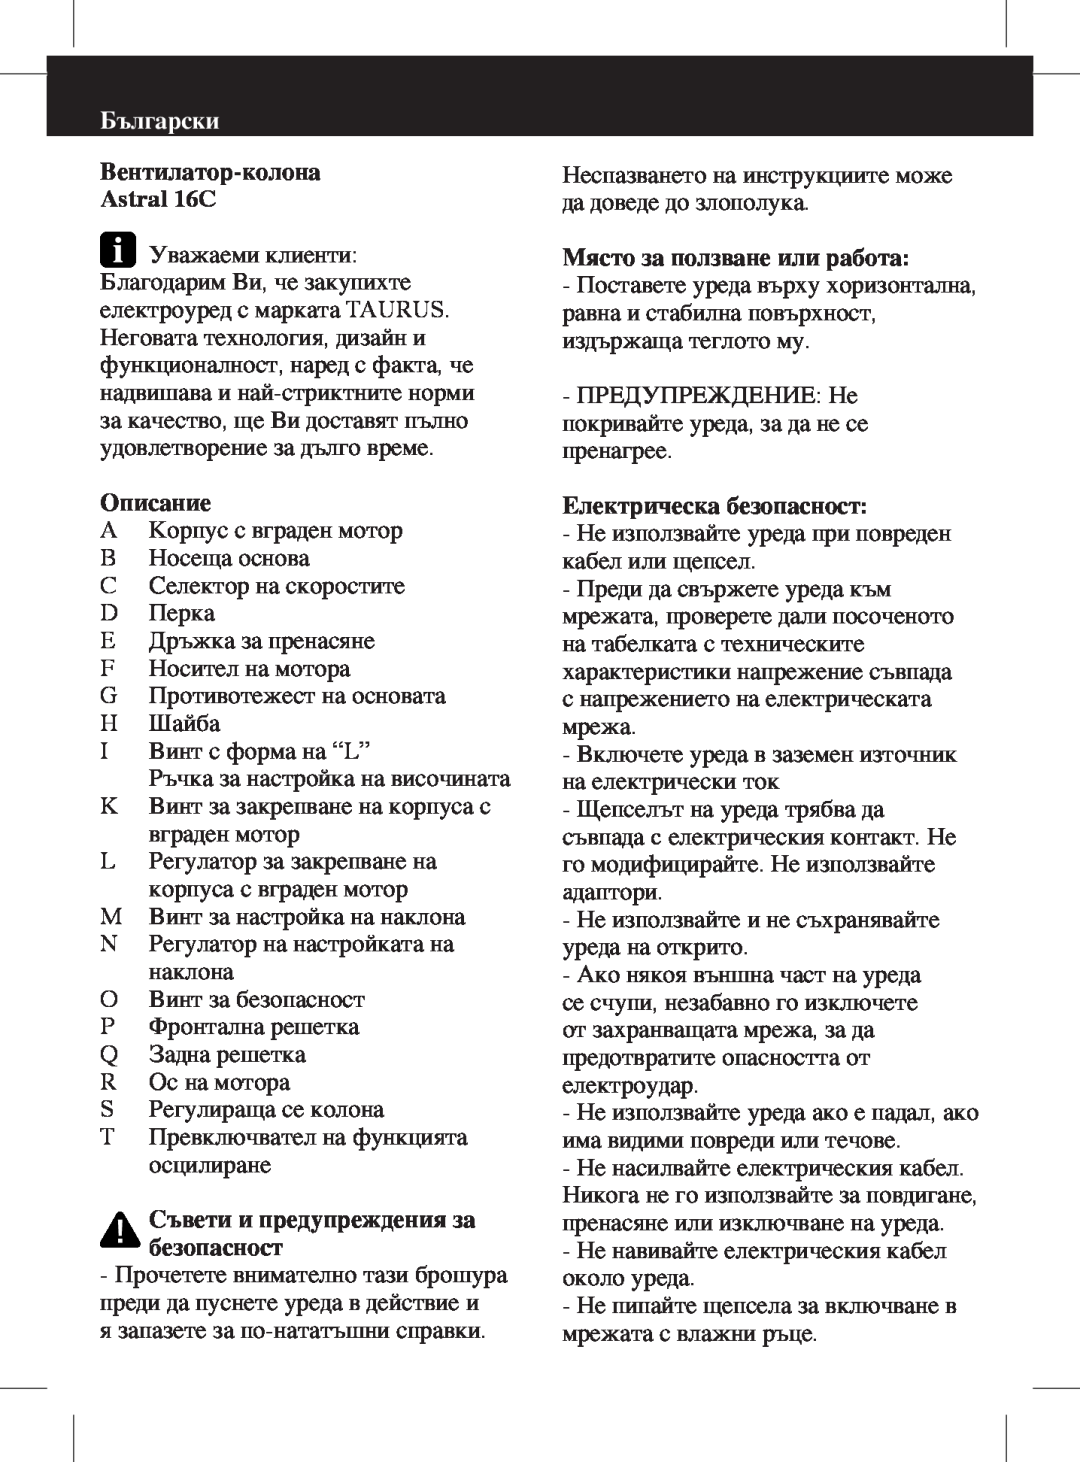 Taurus Group Astral 16C manual Български, Съвети и предупреждения за безопасност, Място за ползване или работа, Описание 